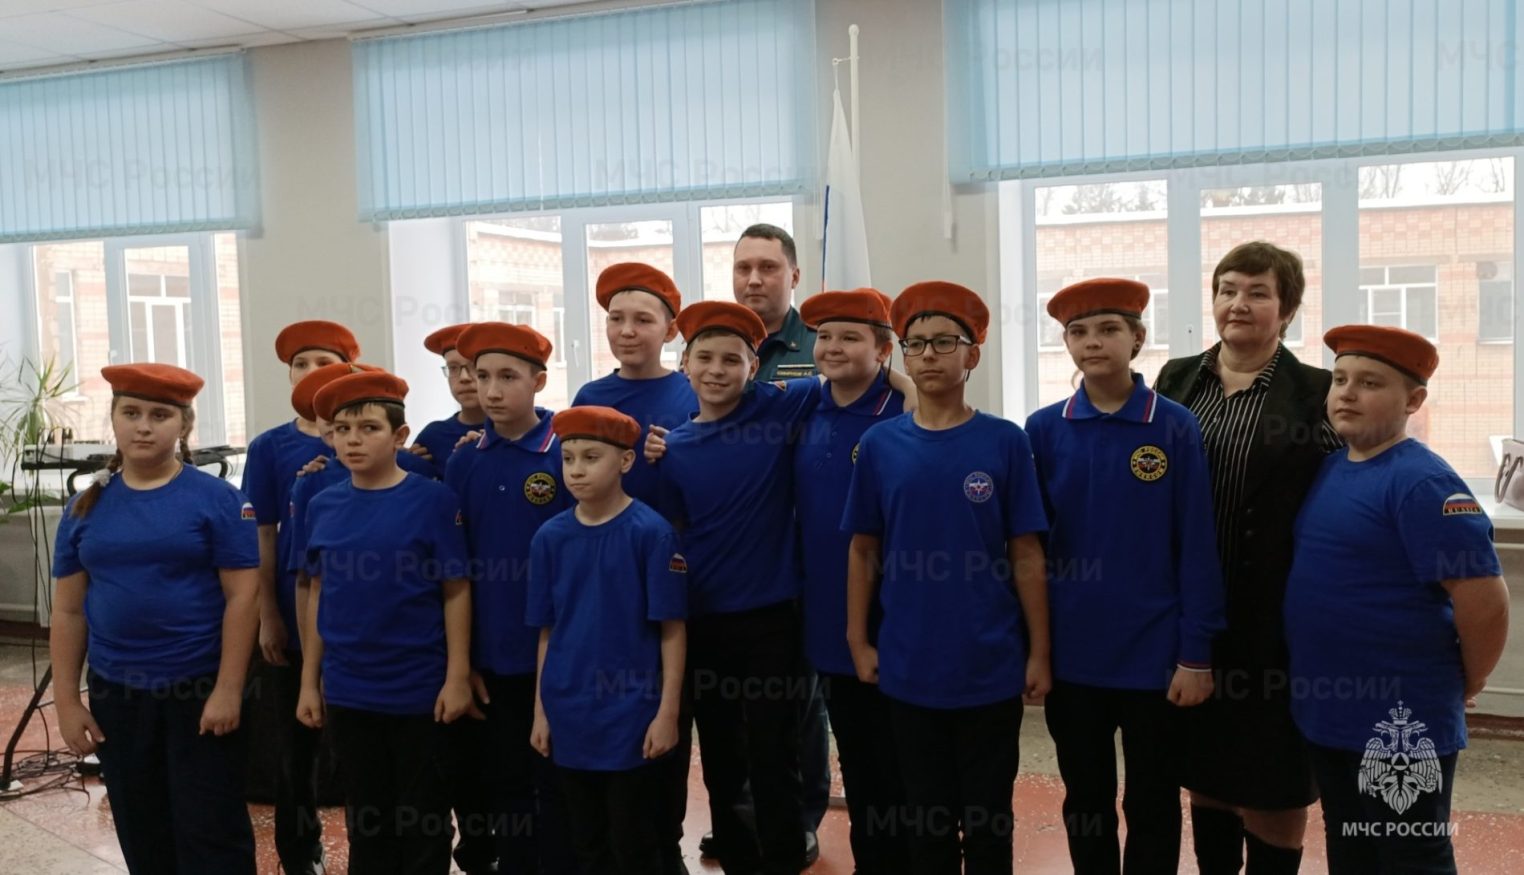 Юные костромские кадеты приняли присягу